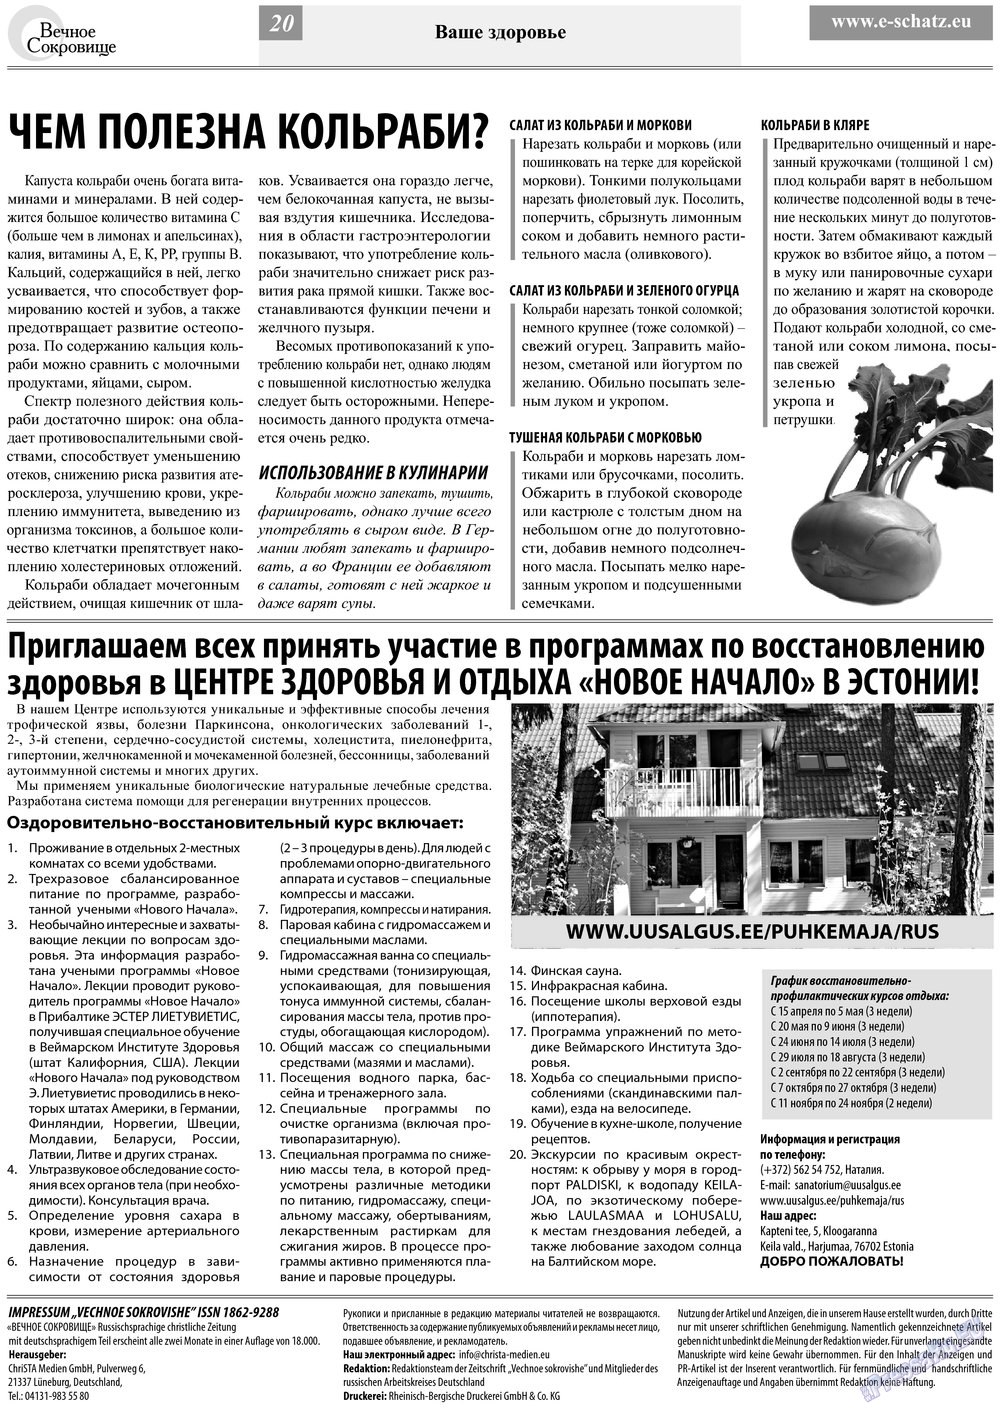 Вечное сокровище (газета). 2013 год, номер 2, стр. 20